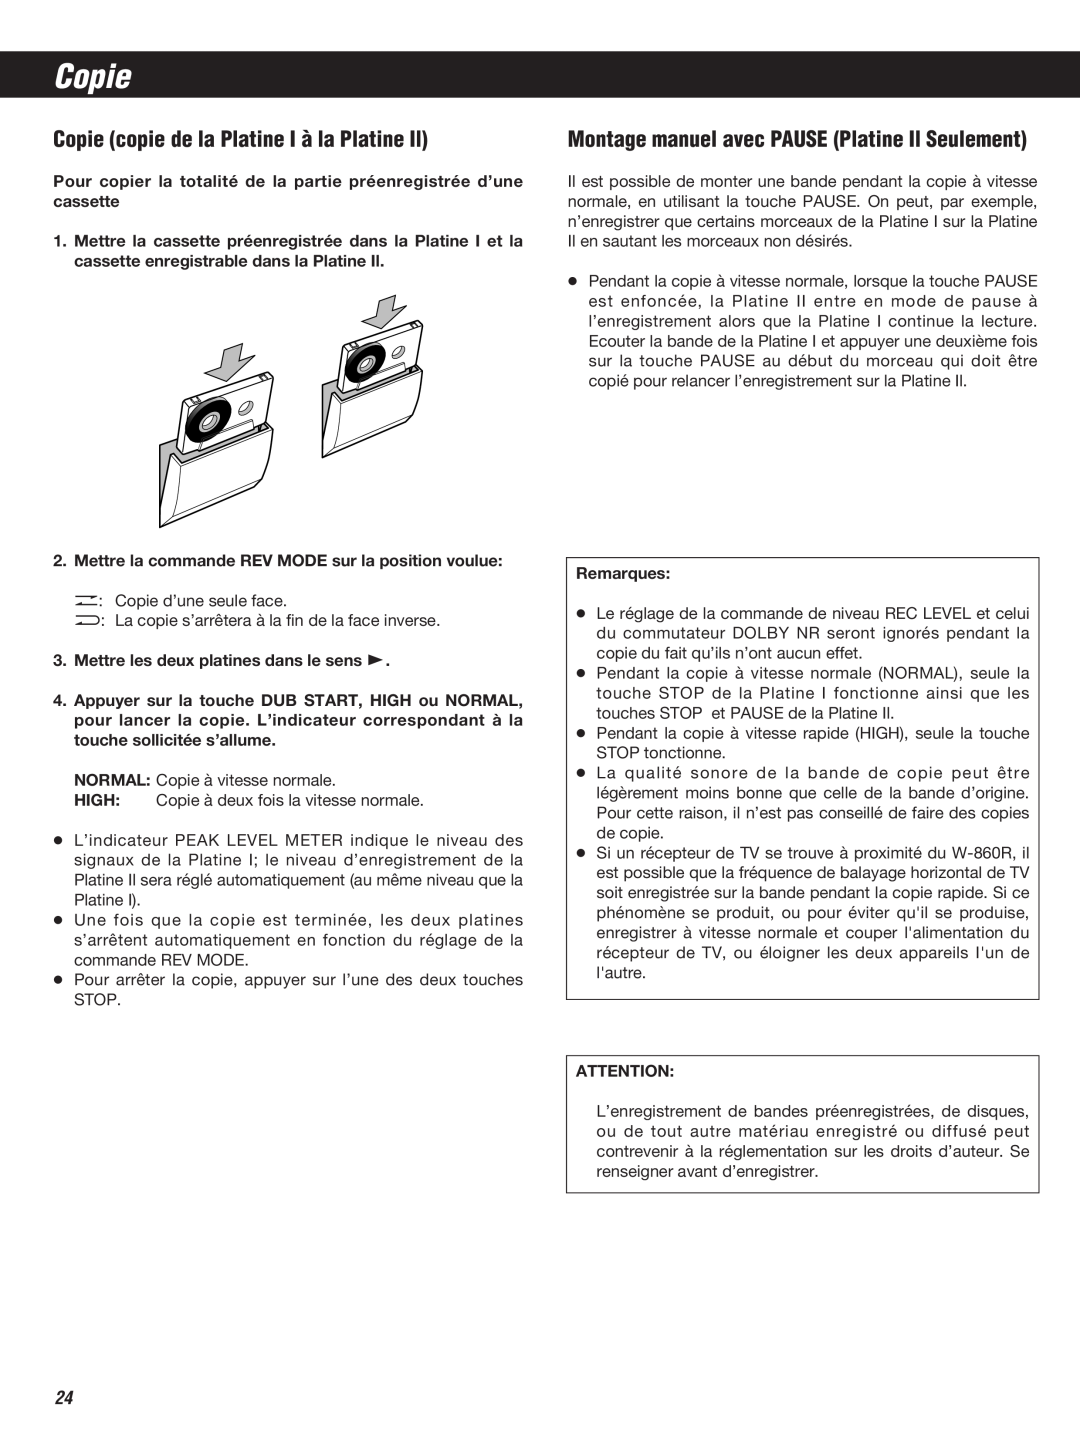 Teac W-860R owner manual Copie copie de la Platine I à la Platine Il, Montage manuel avec PAUSE Platine Il Seulement 